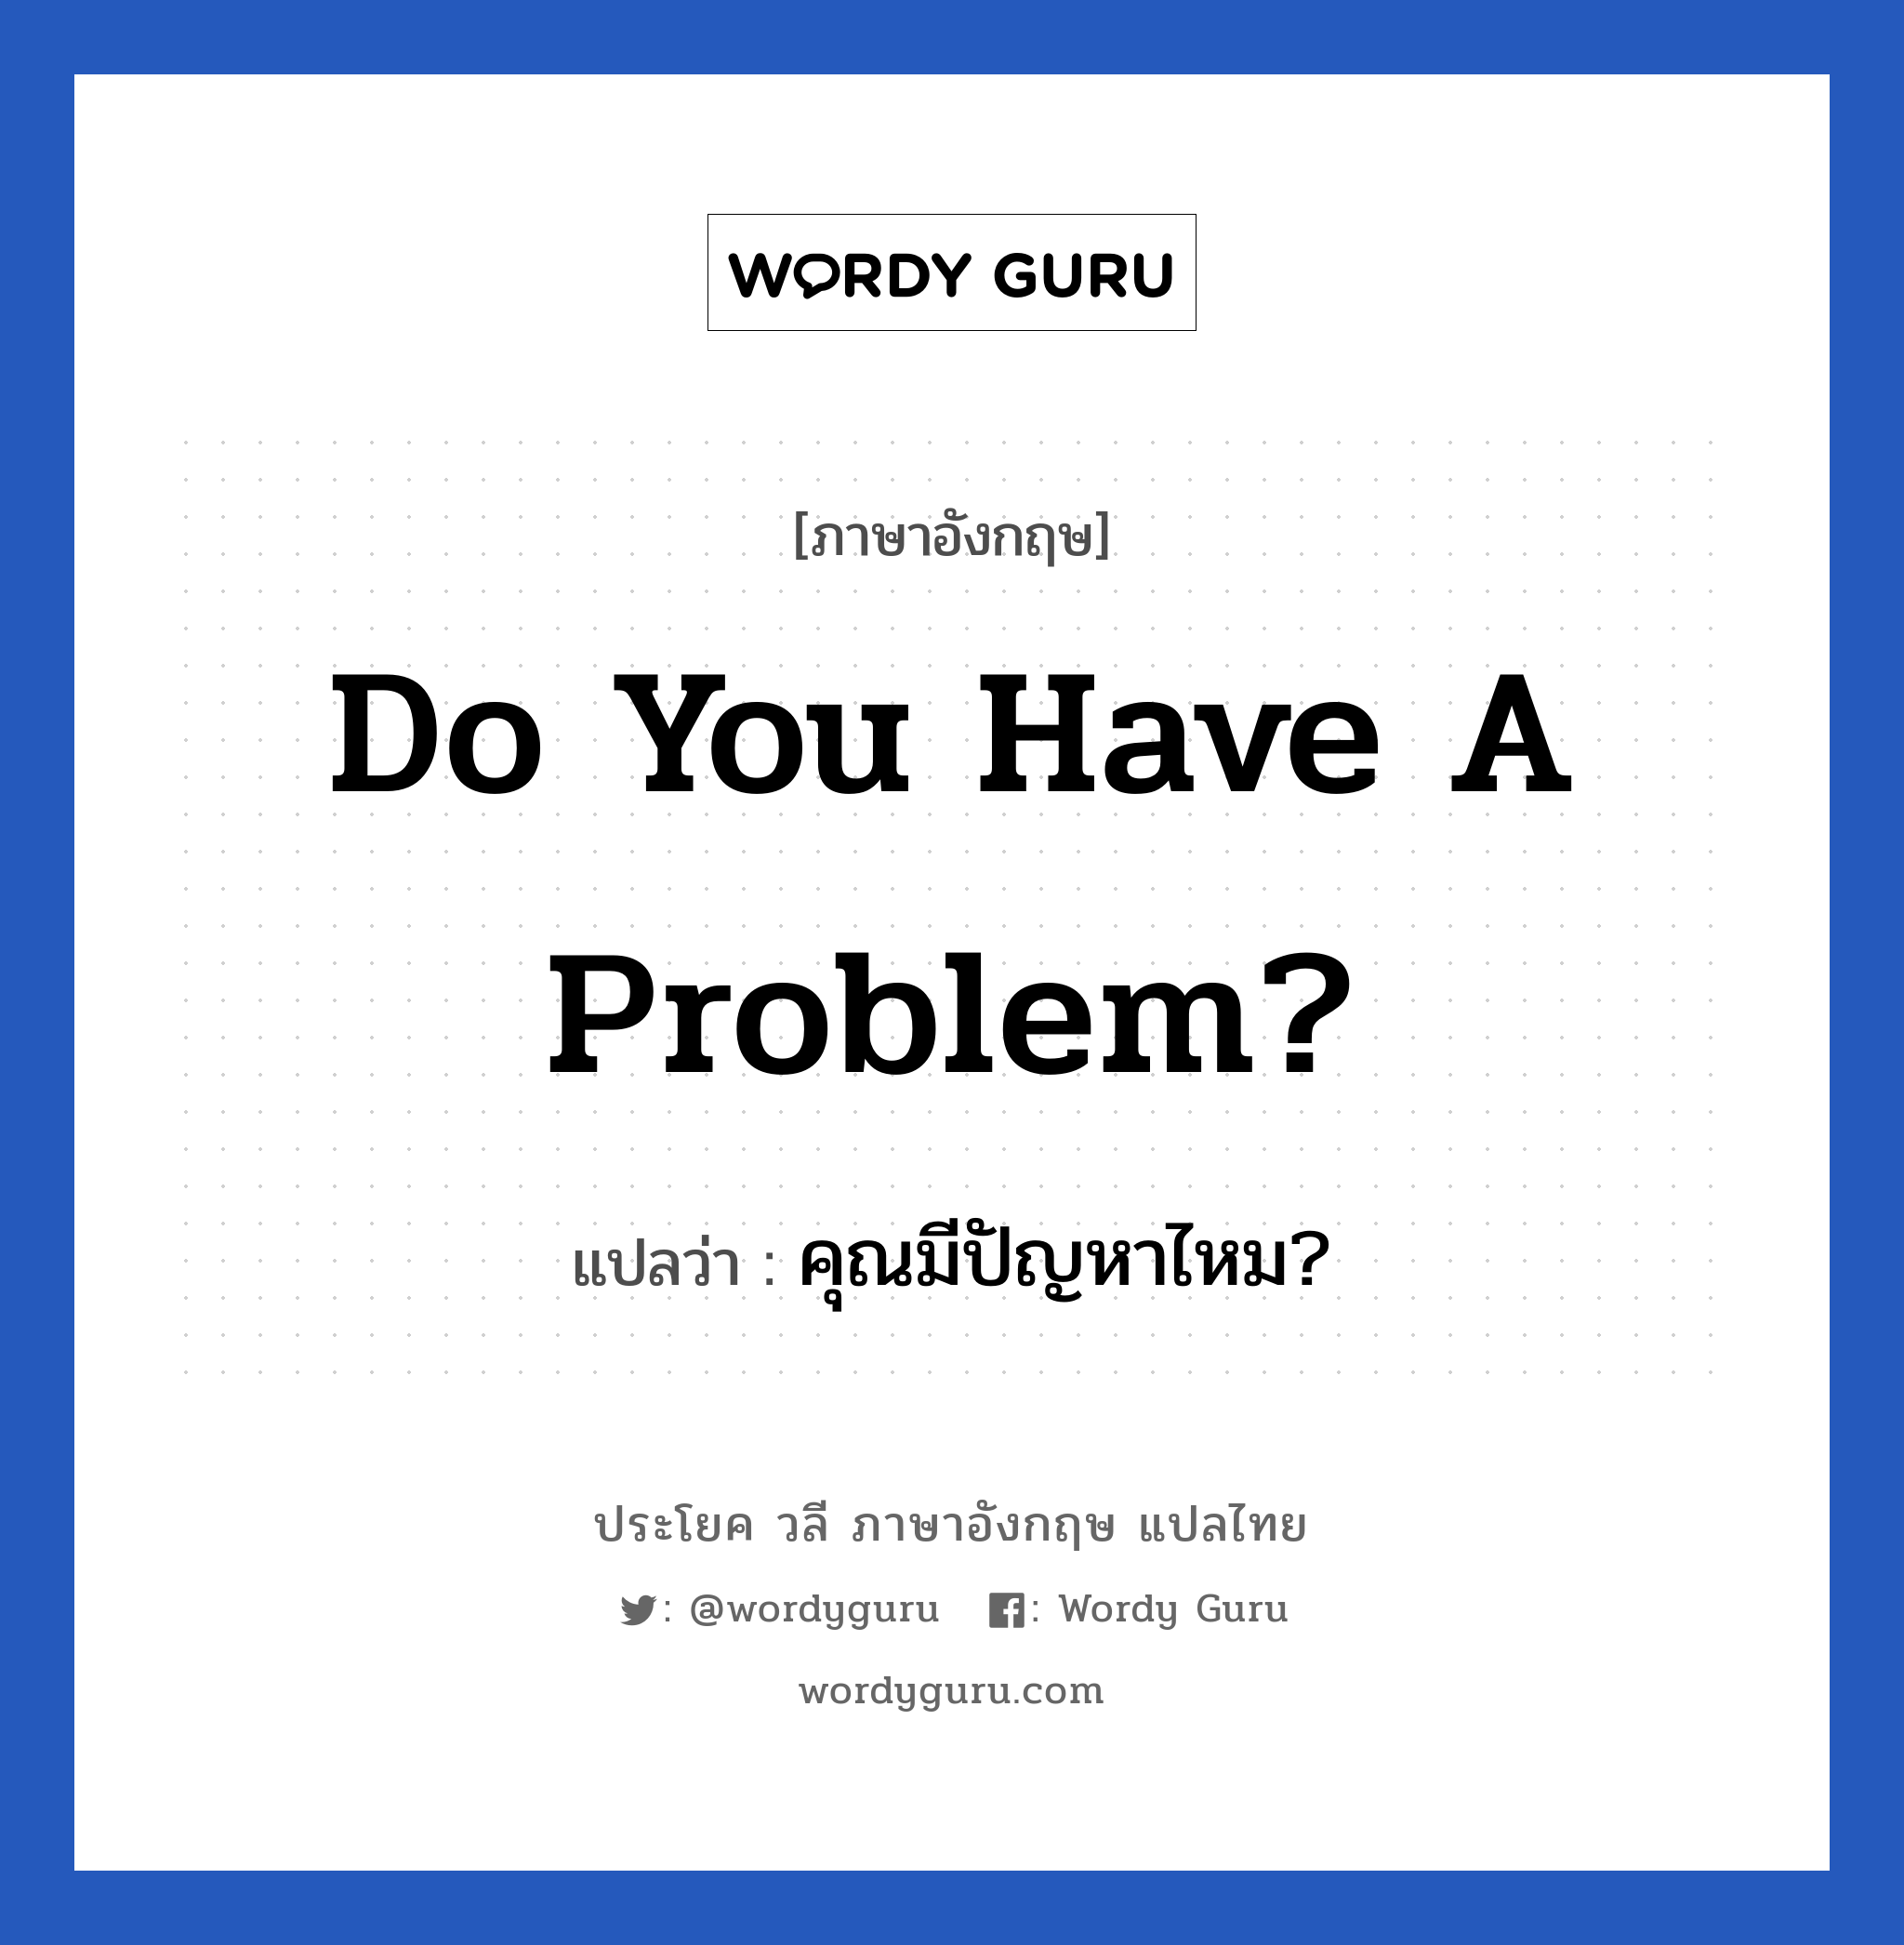 Do you have a problem? แปลว่า?, วลีภาษาอังกฤษ Do you have a problem? แปลว่า คุณมีปัญหาไหม?